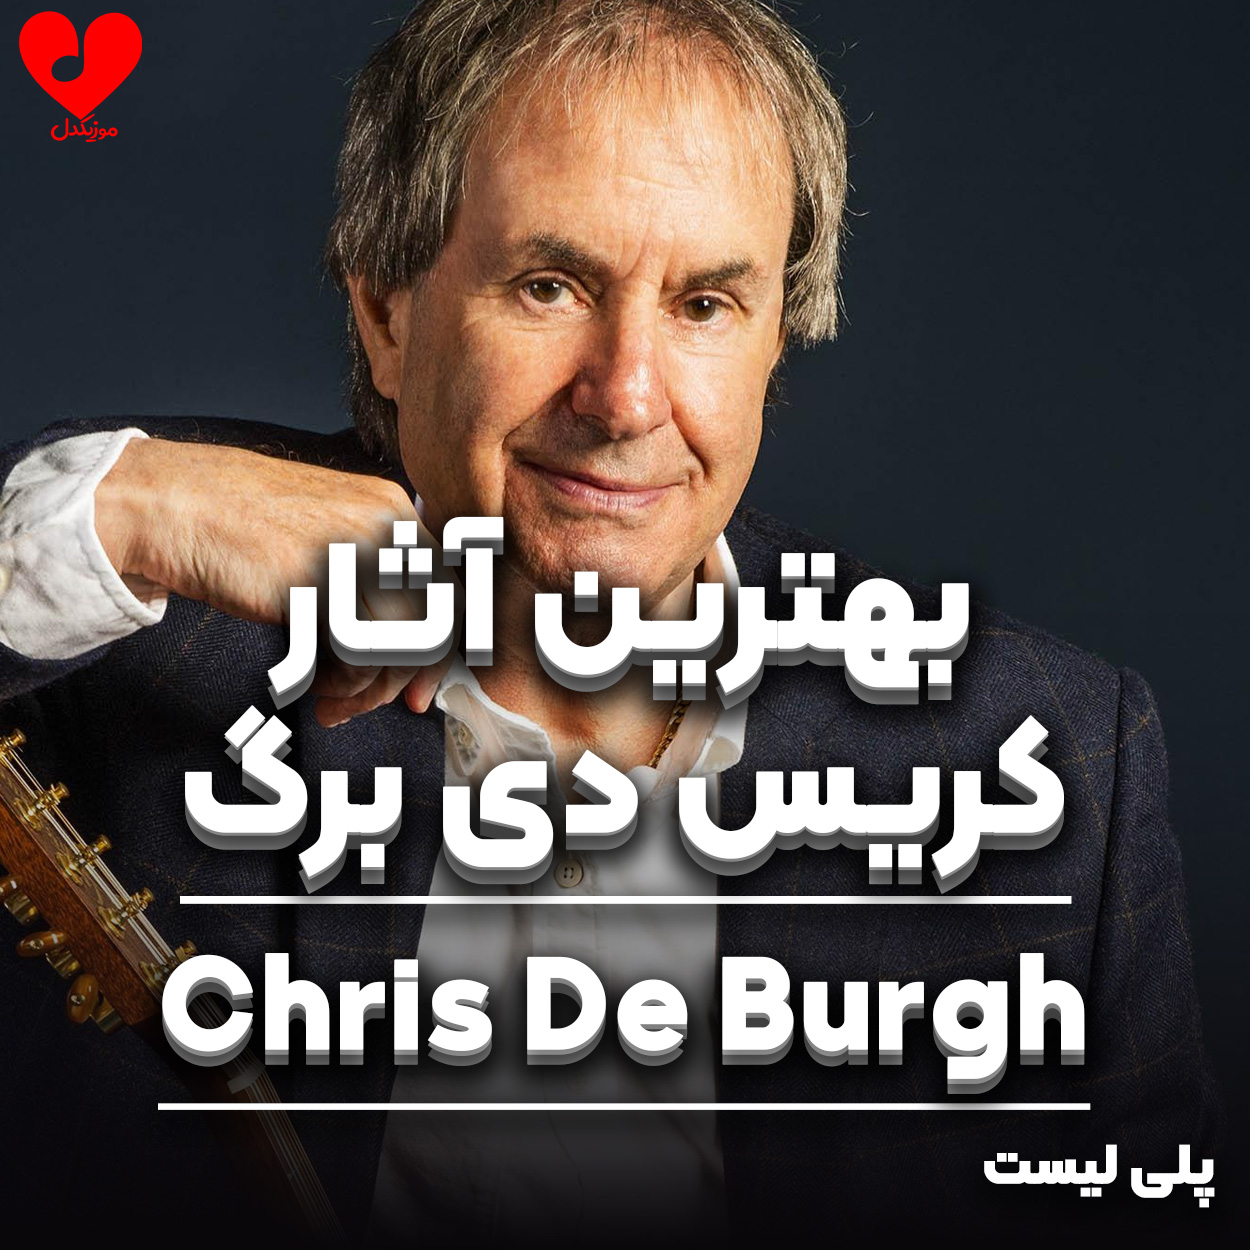 پلی لیست بهترین آهنگ های Chris de Burgh ( کریس دی برگ )